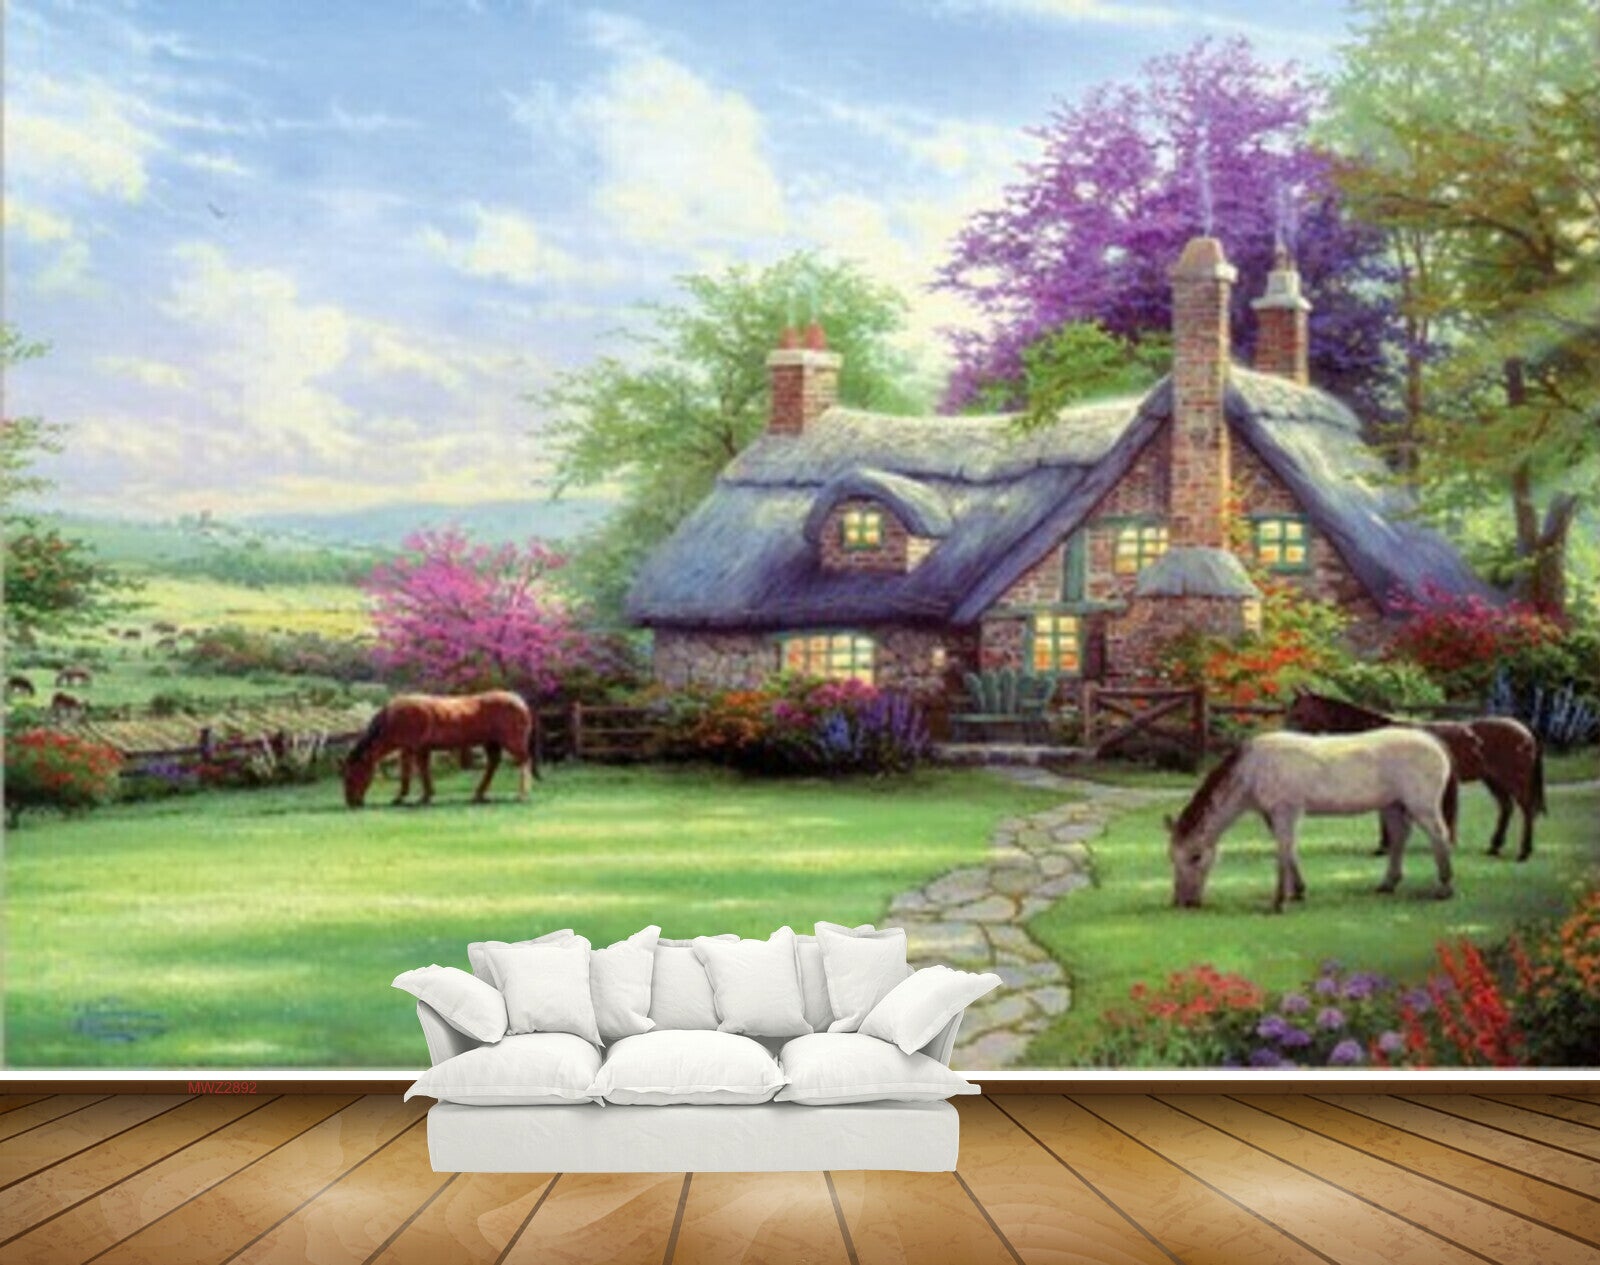 Avikalp MWZ2892 Sky House Horses Trees Grass Garden Plants Clouds Painting HD Wallpaper